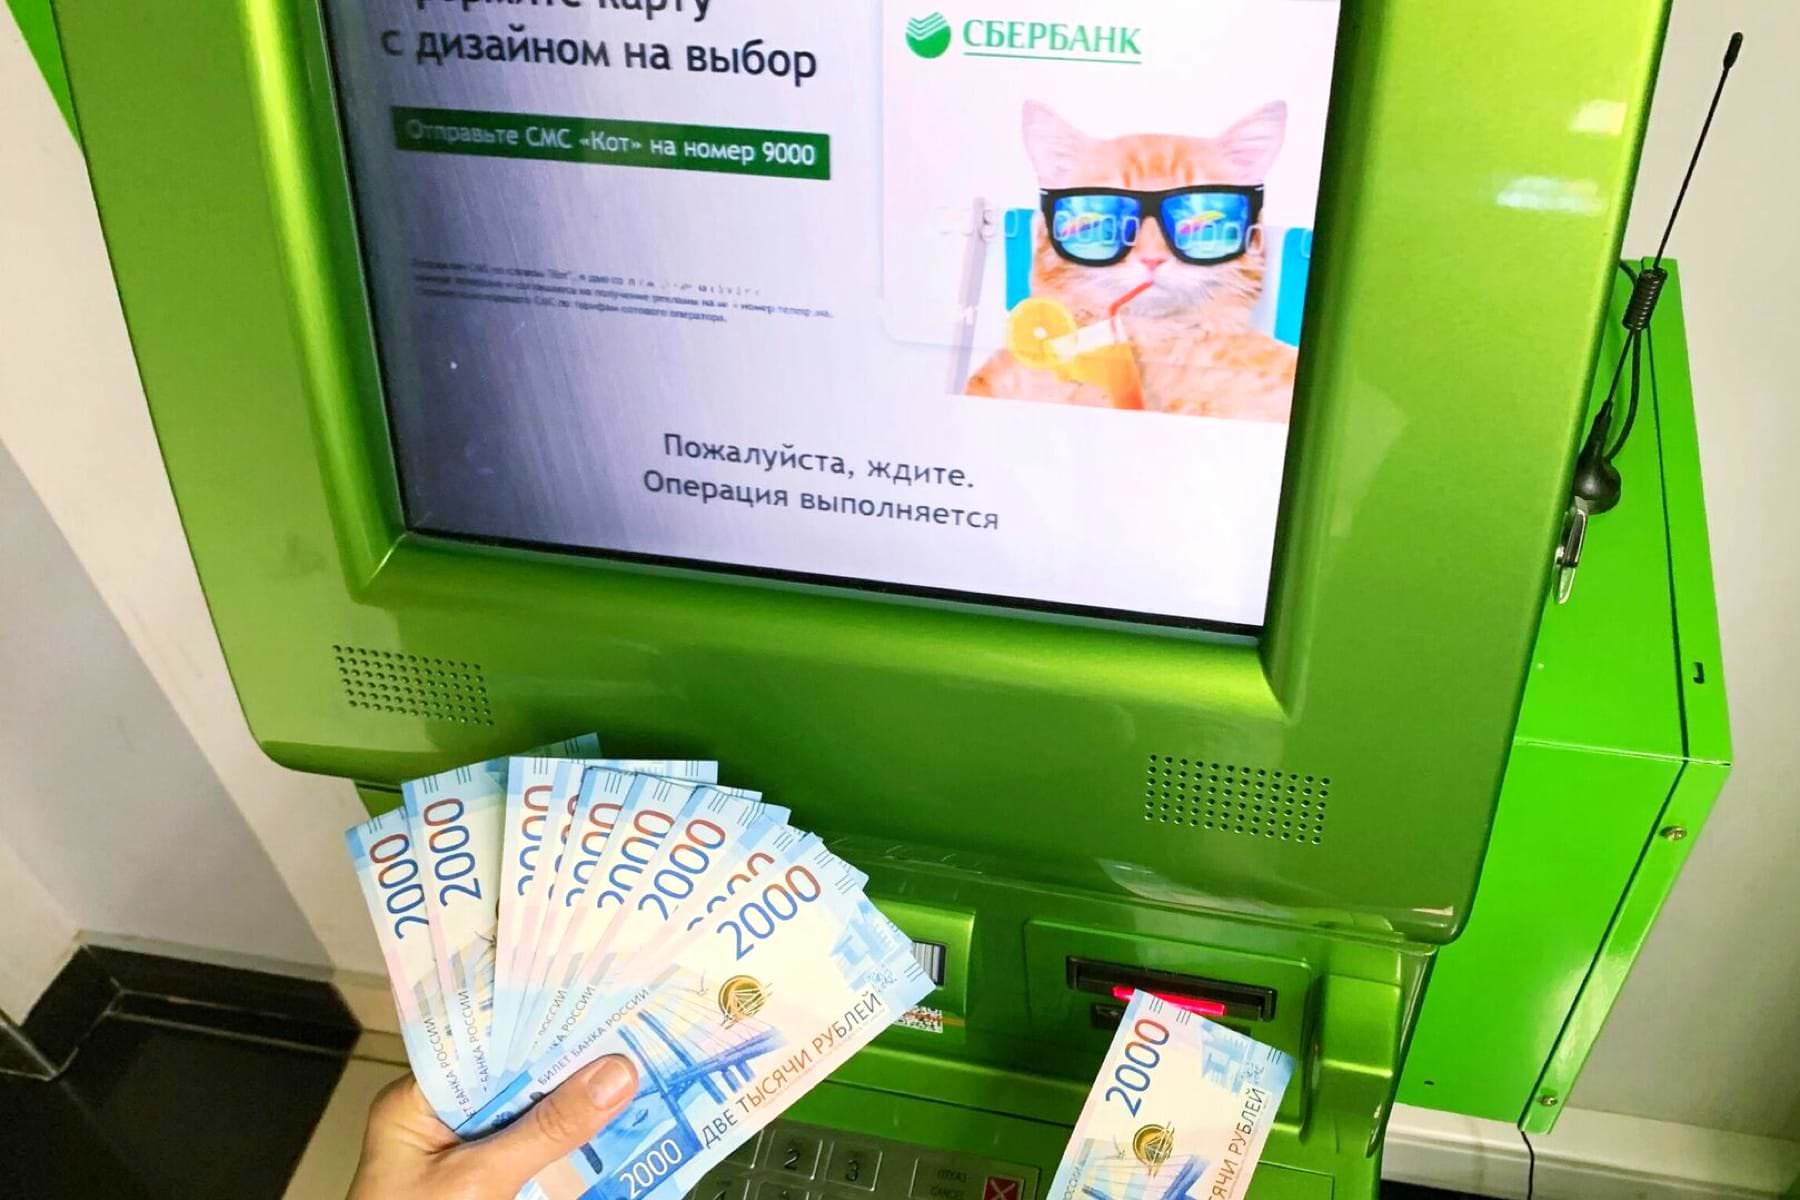 «Сбербанк» опубликовал адреса, где работают мобильные офисы и банкоматы в Крыму